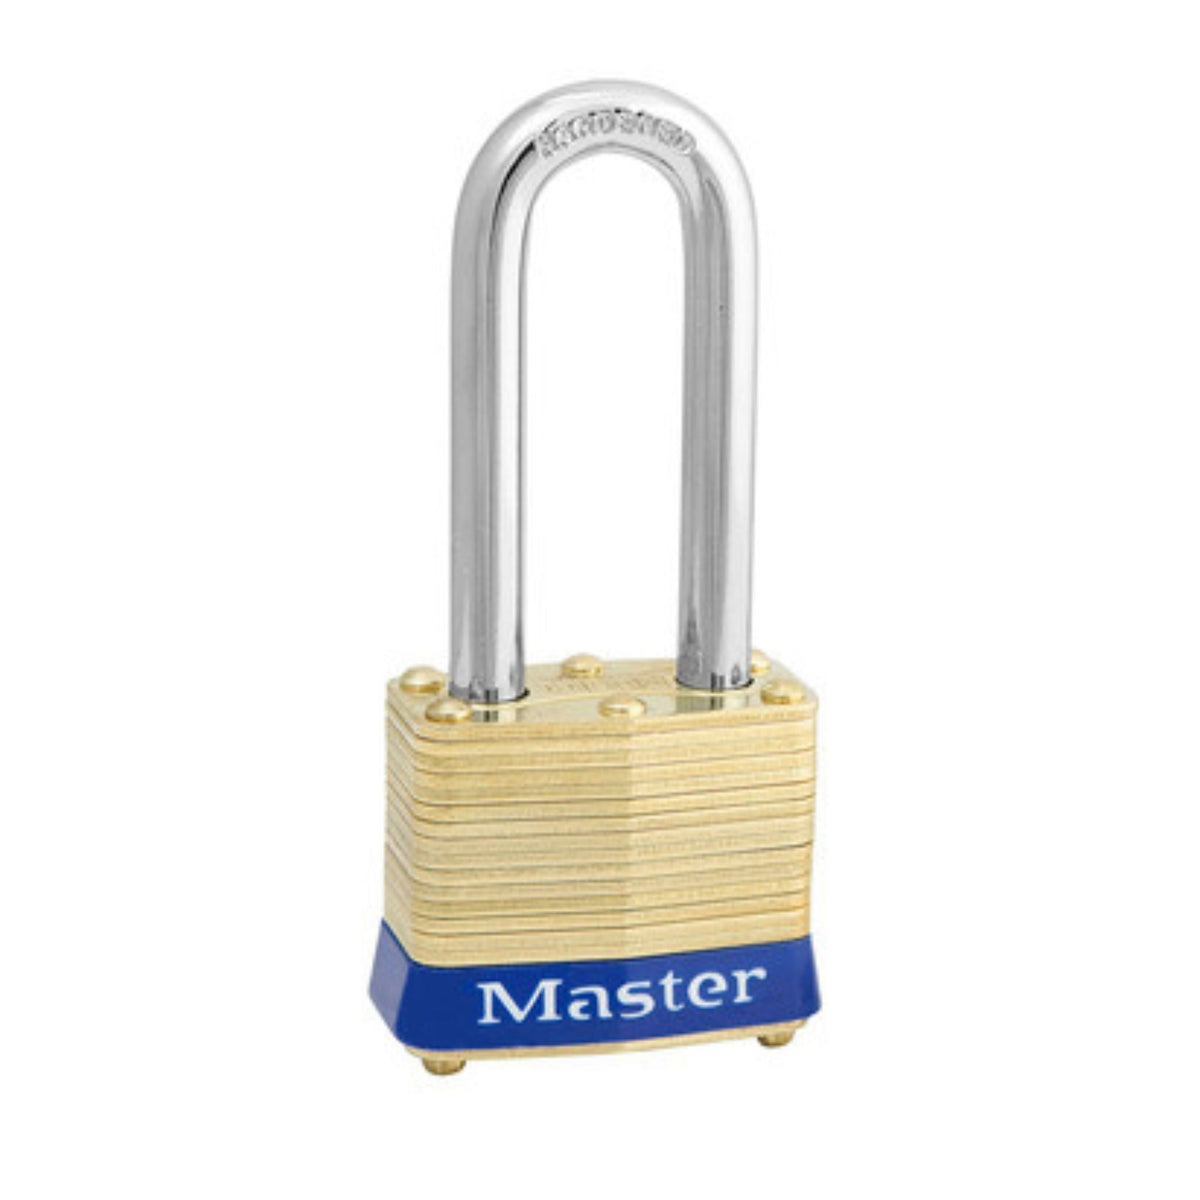 Master Lock 4KALH X2340 Lock Laminated brass No. 4KALH Series Padlock Keyed to Match Existing Key Number KA2340 - The Lock Source